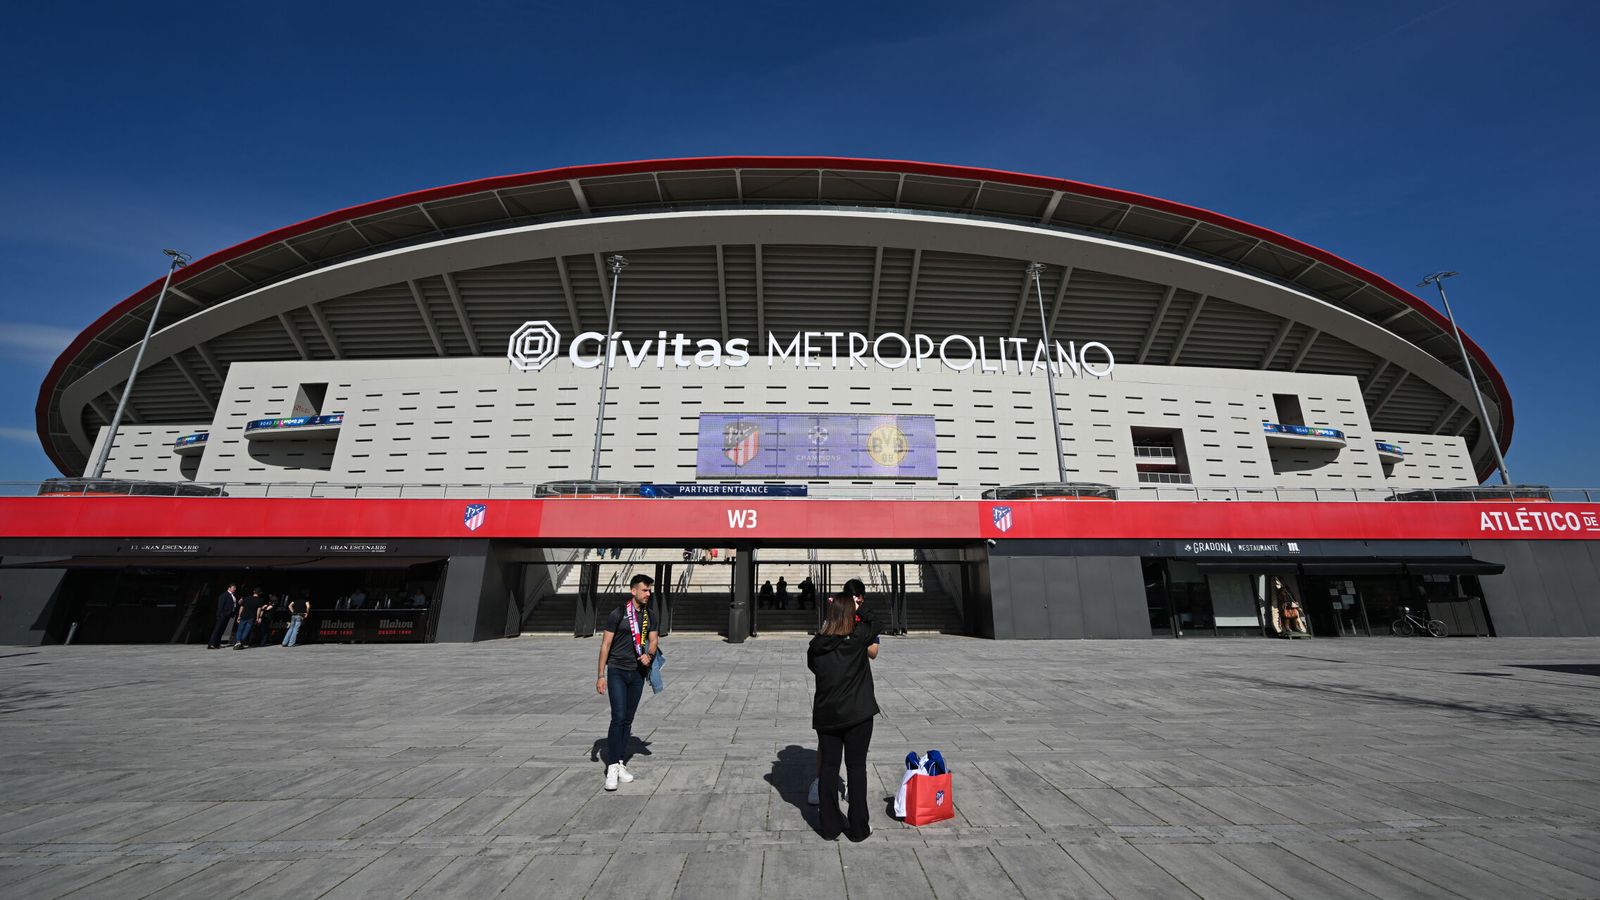 Vista del estadio de fútbol del Atlético de Madrid, Cívitas Metropolitano.